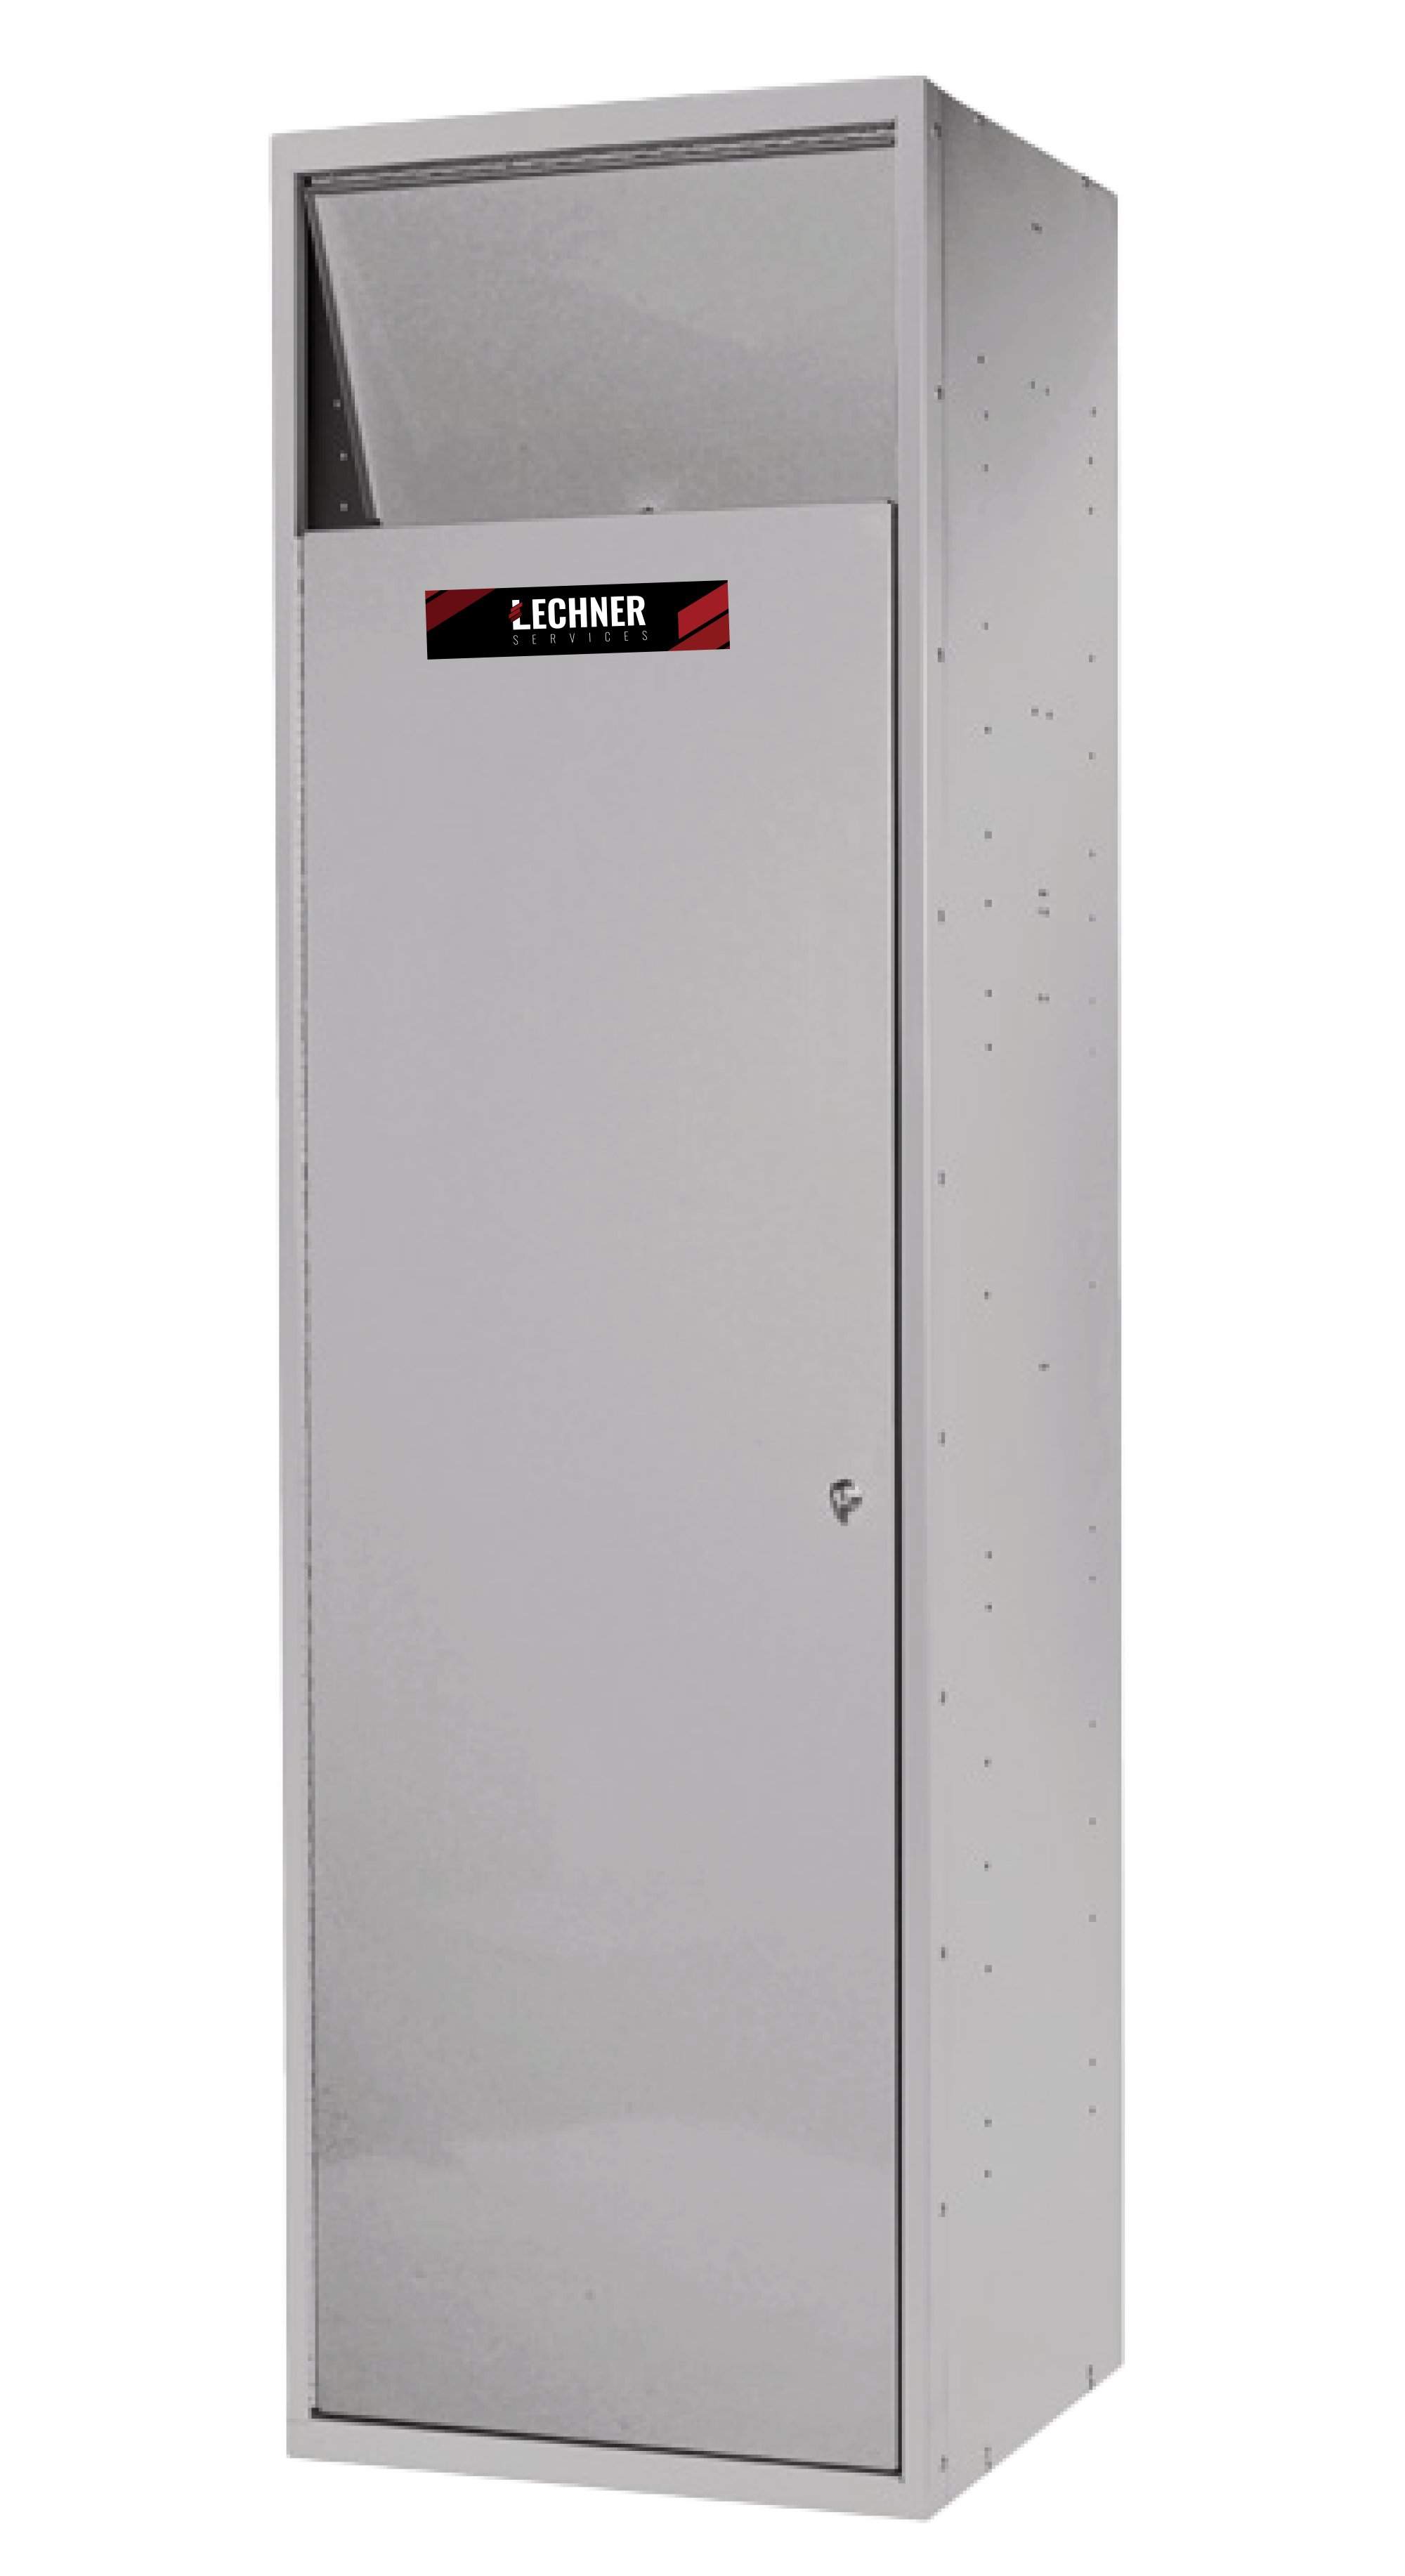 lechner locker - resized